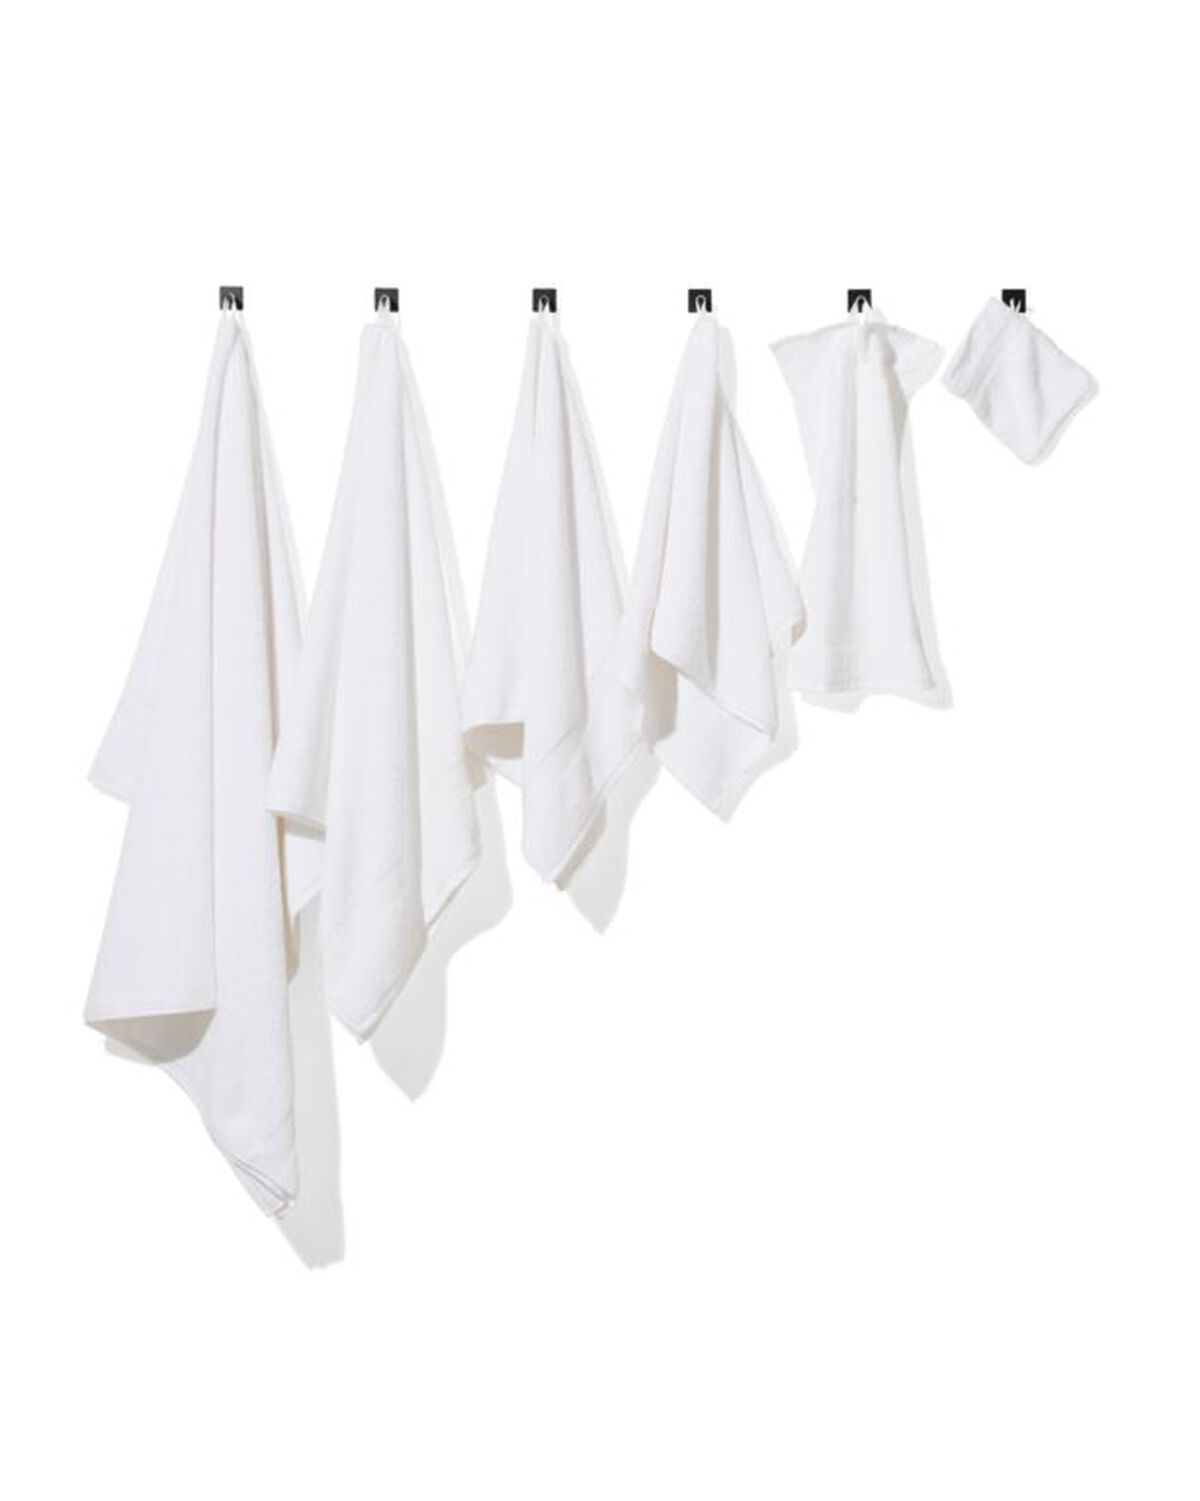 serviettes de bain qualité hôtel ultra douces blanc - 200216 - HEMA